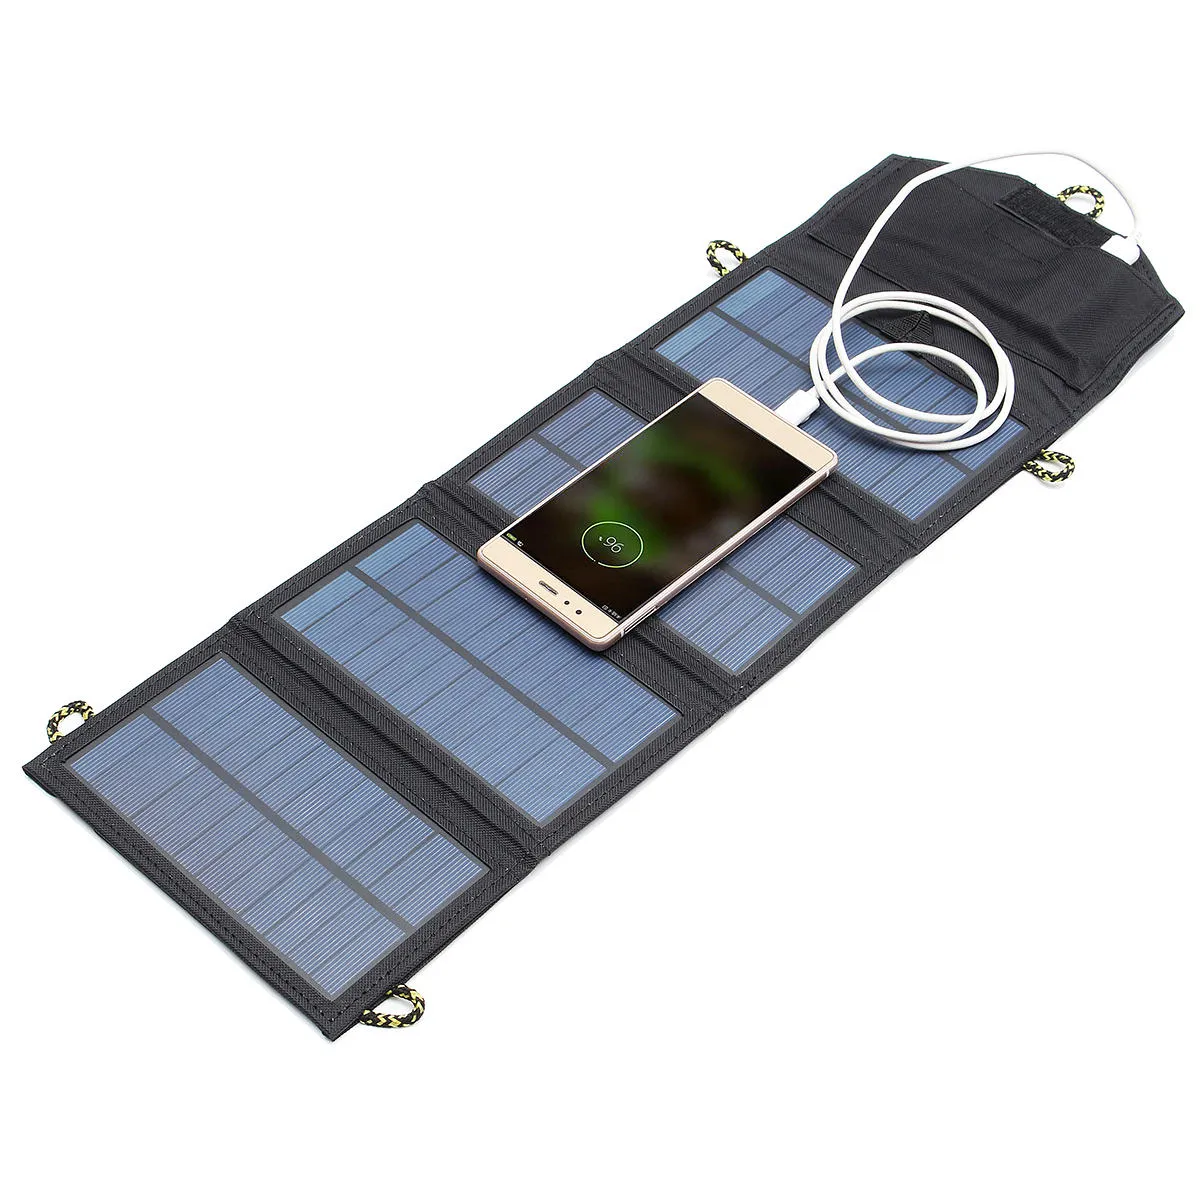 Venda quente 5V 7W portátil painel solar ao ar livre emergência do curso do poder dobrável do carregador de emergência com porta USB, dispositivos exteriores